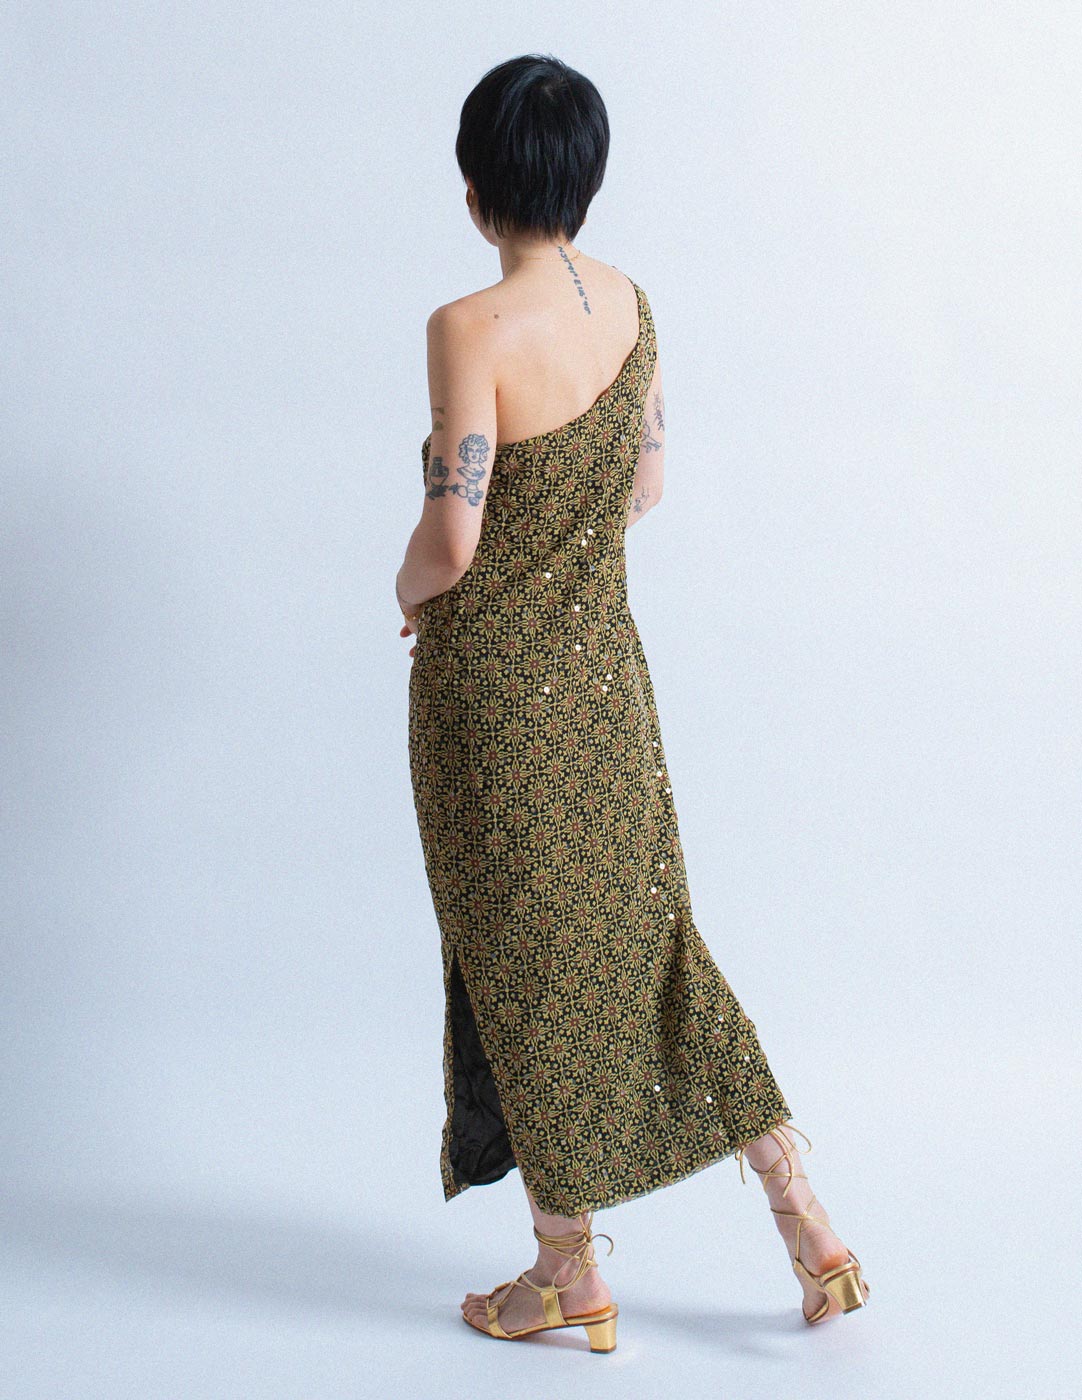 Versus vintage patterned sequin silk dress back view